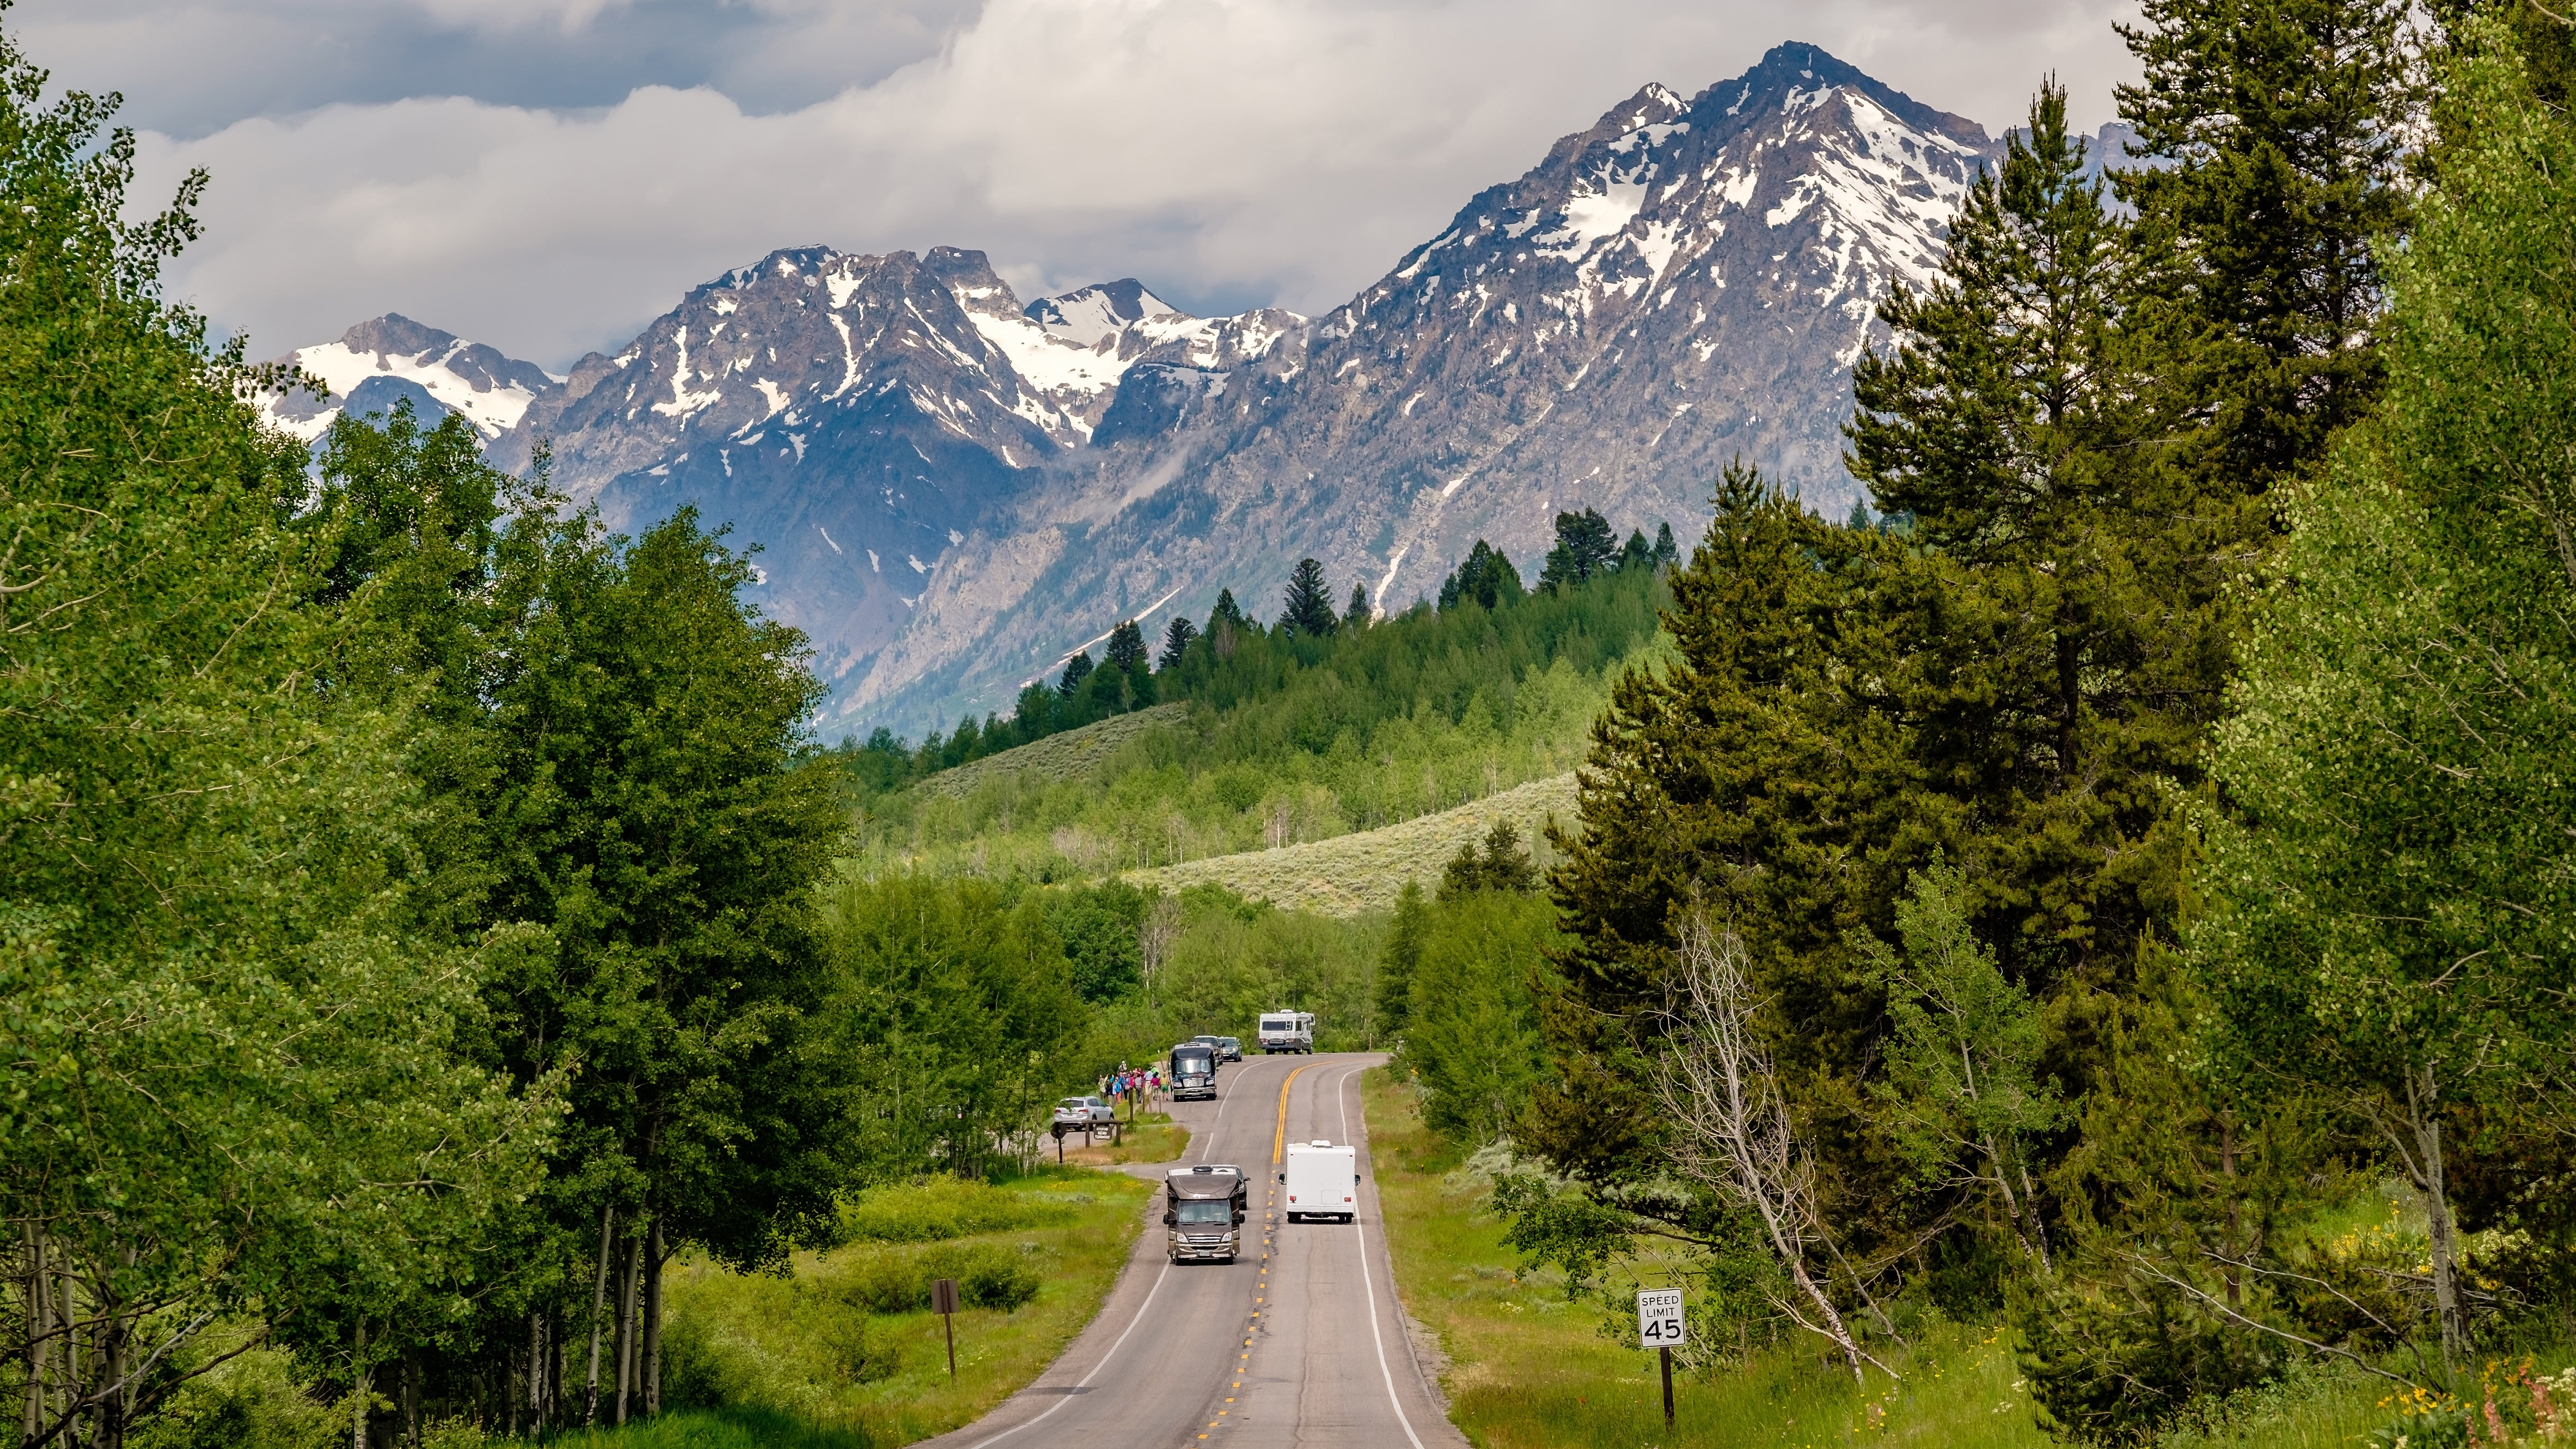 Wohnmobile fahren auf einem Highway im Grand Teton National Park, Wyoming, USA. | picture alliance / Zoonar